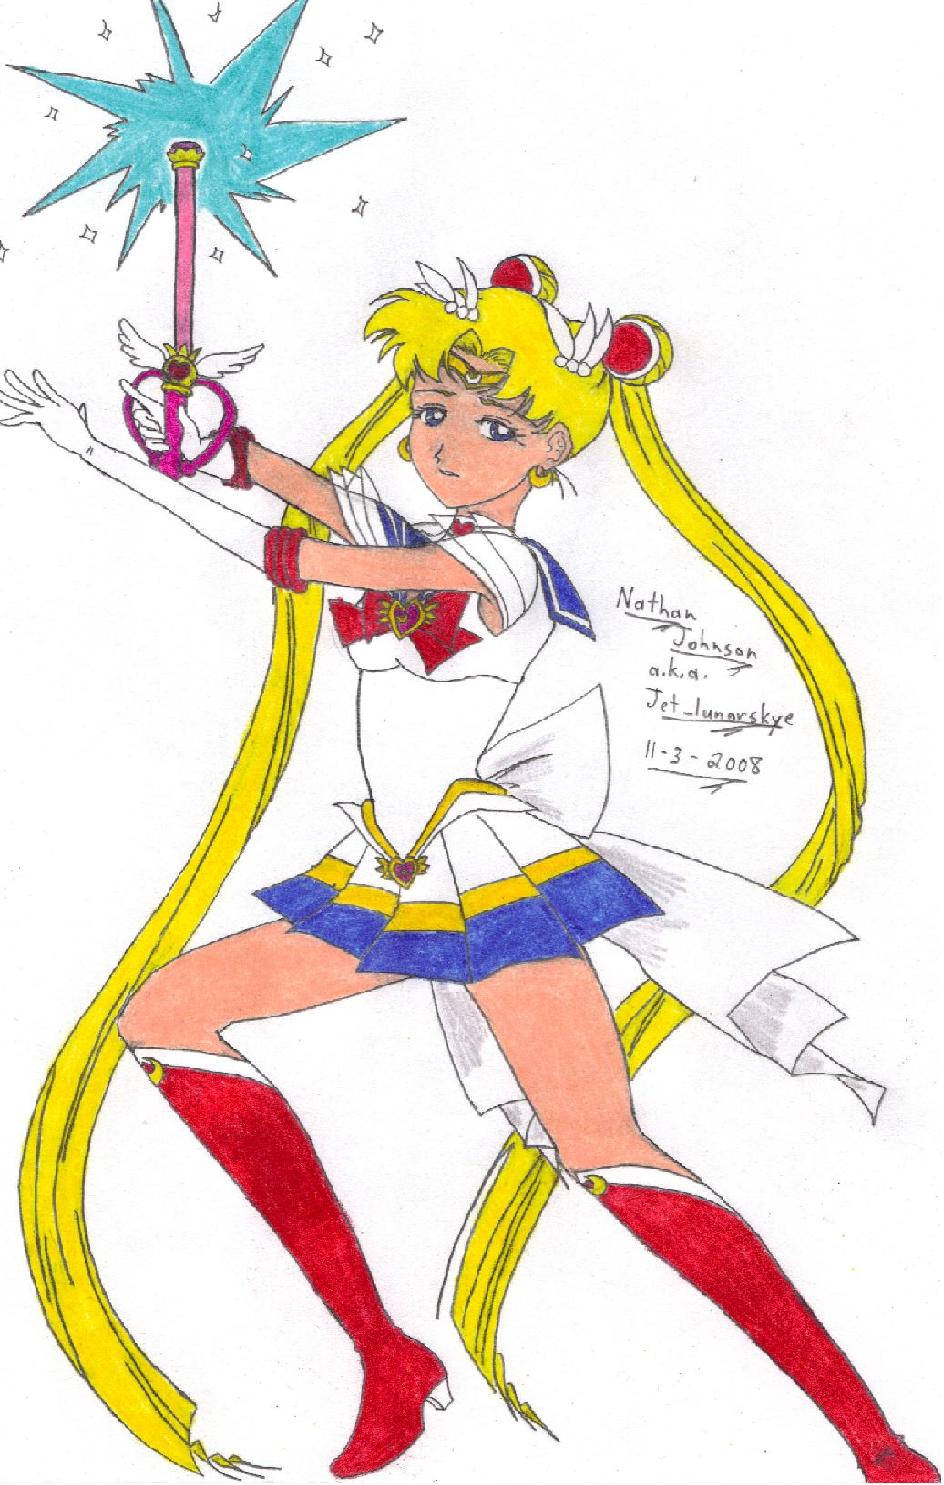 Sailor Moon Attacks by Jet_lunarskye